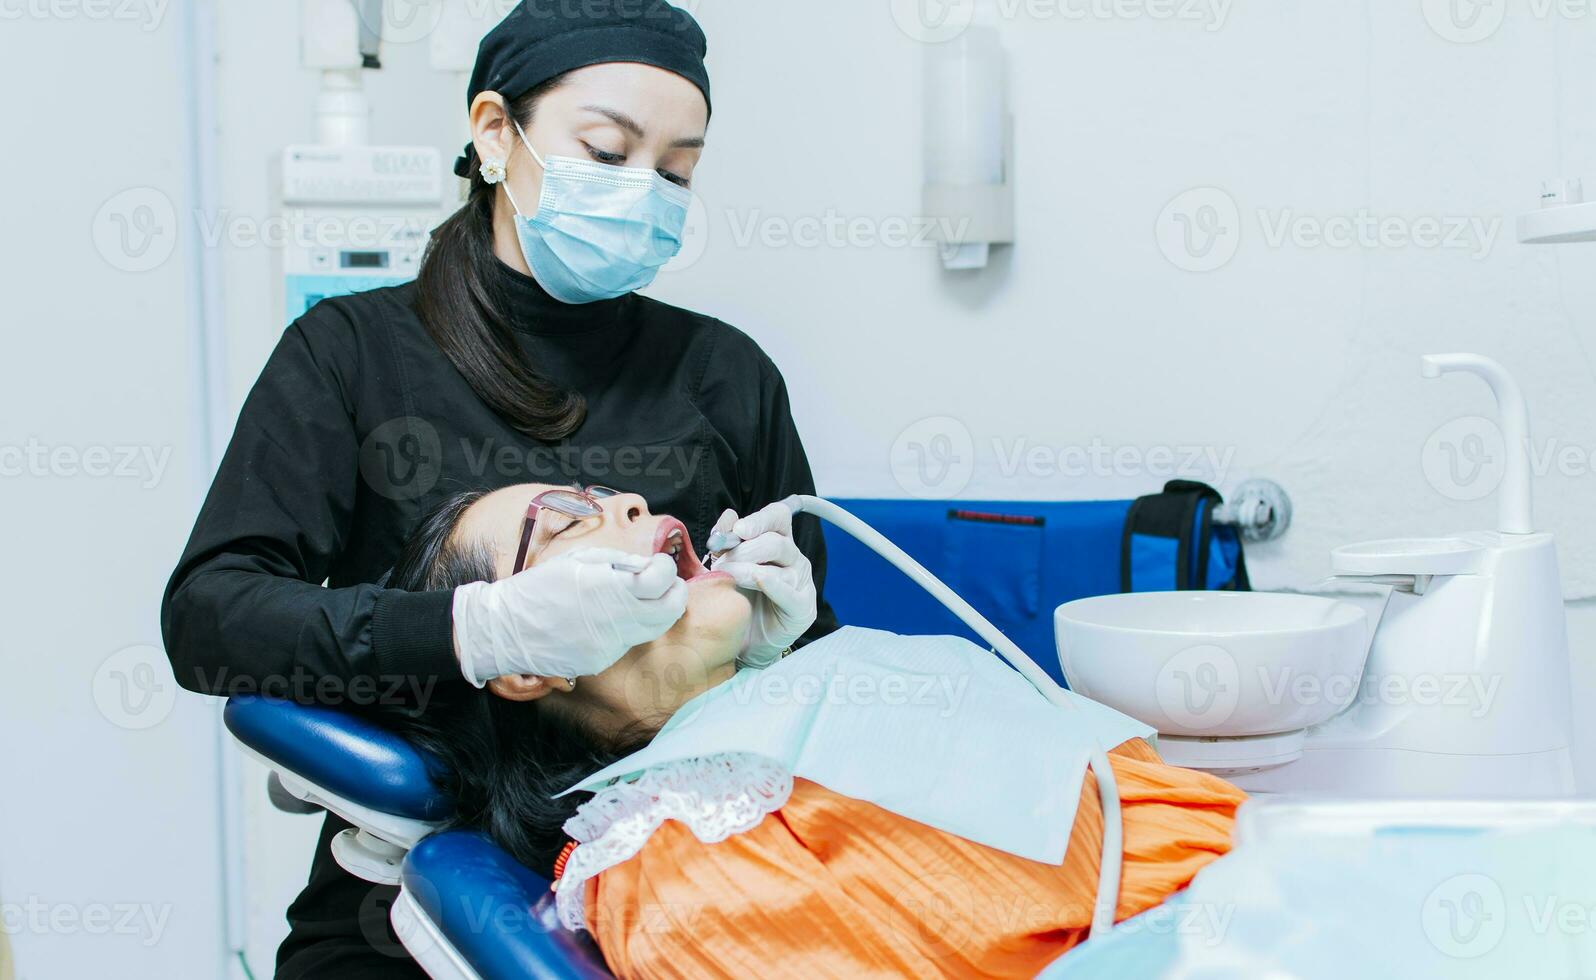 el estomatólogo limpieza un del paciente dientes, un dentista limpieza un del paciente boca, un dentista limpieza un del paciente caries, un dentista limpieza un del paciente boca foto